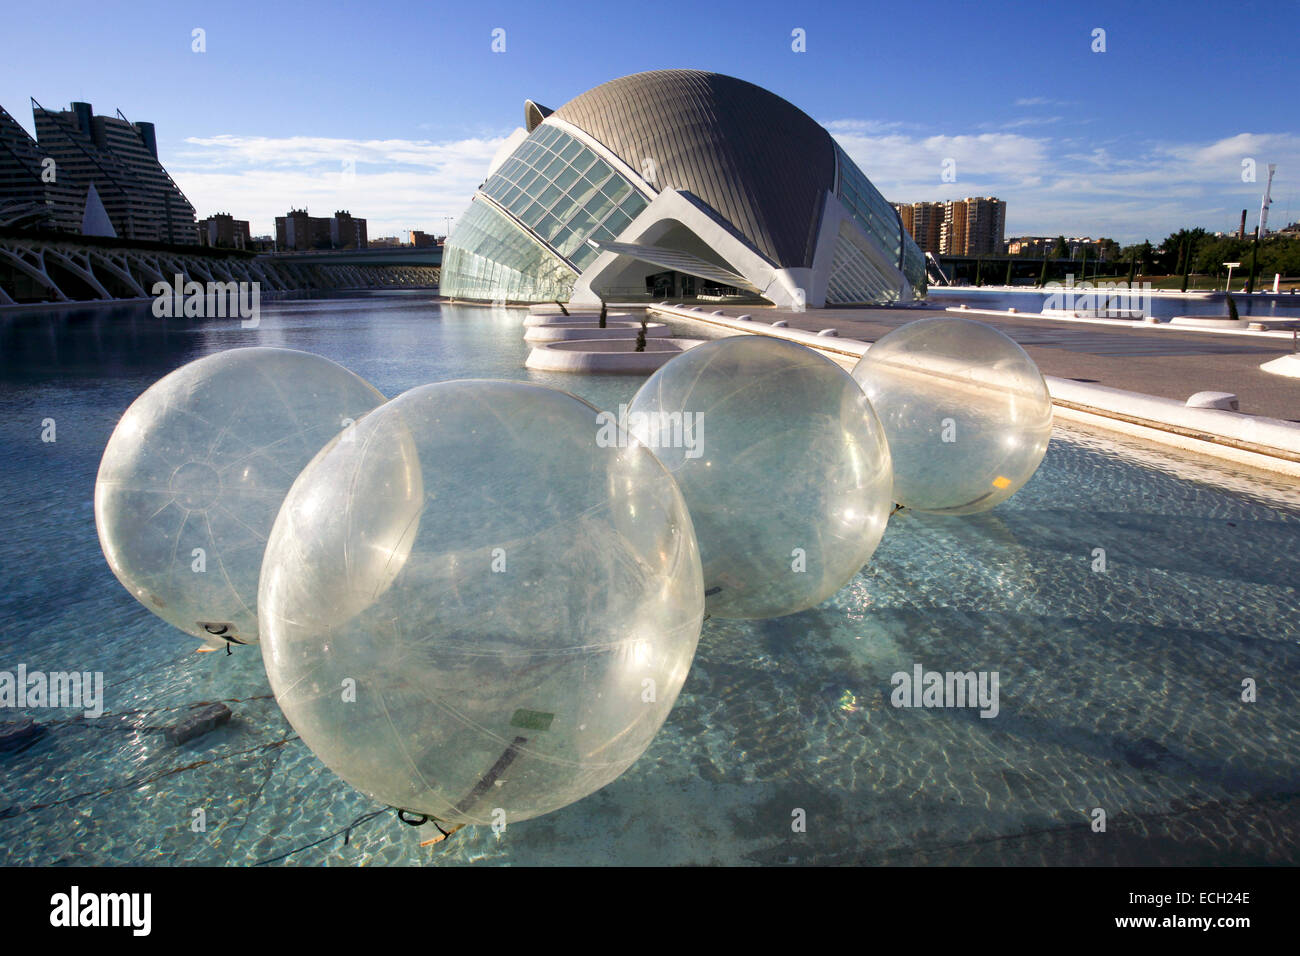 Caminatas en el agua inflable Zorb balls en frente de l'Hemisfèric de la Ciudad de las Artes y las Ciencias / Ciudad de las Artes y las Ciencias, Valencia, España Foto de stock